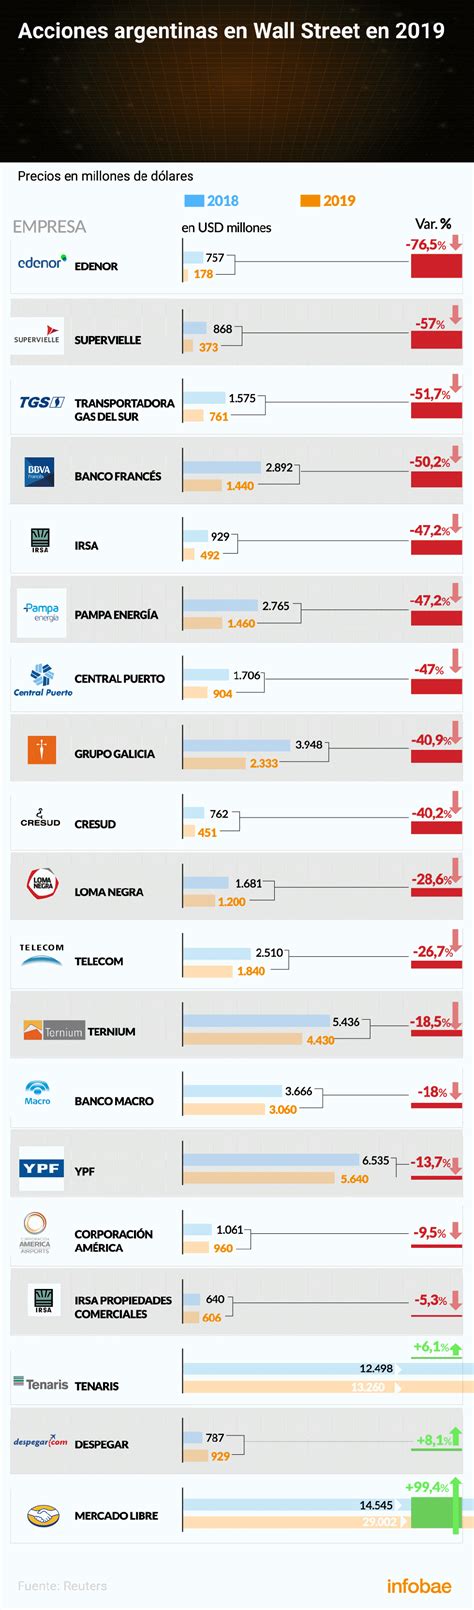 Las empresas argentinas que cotizan en la Bolsa porteña y en Wall ...